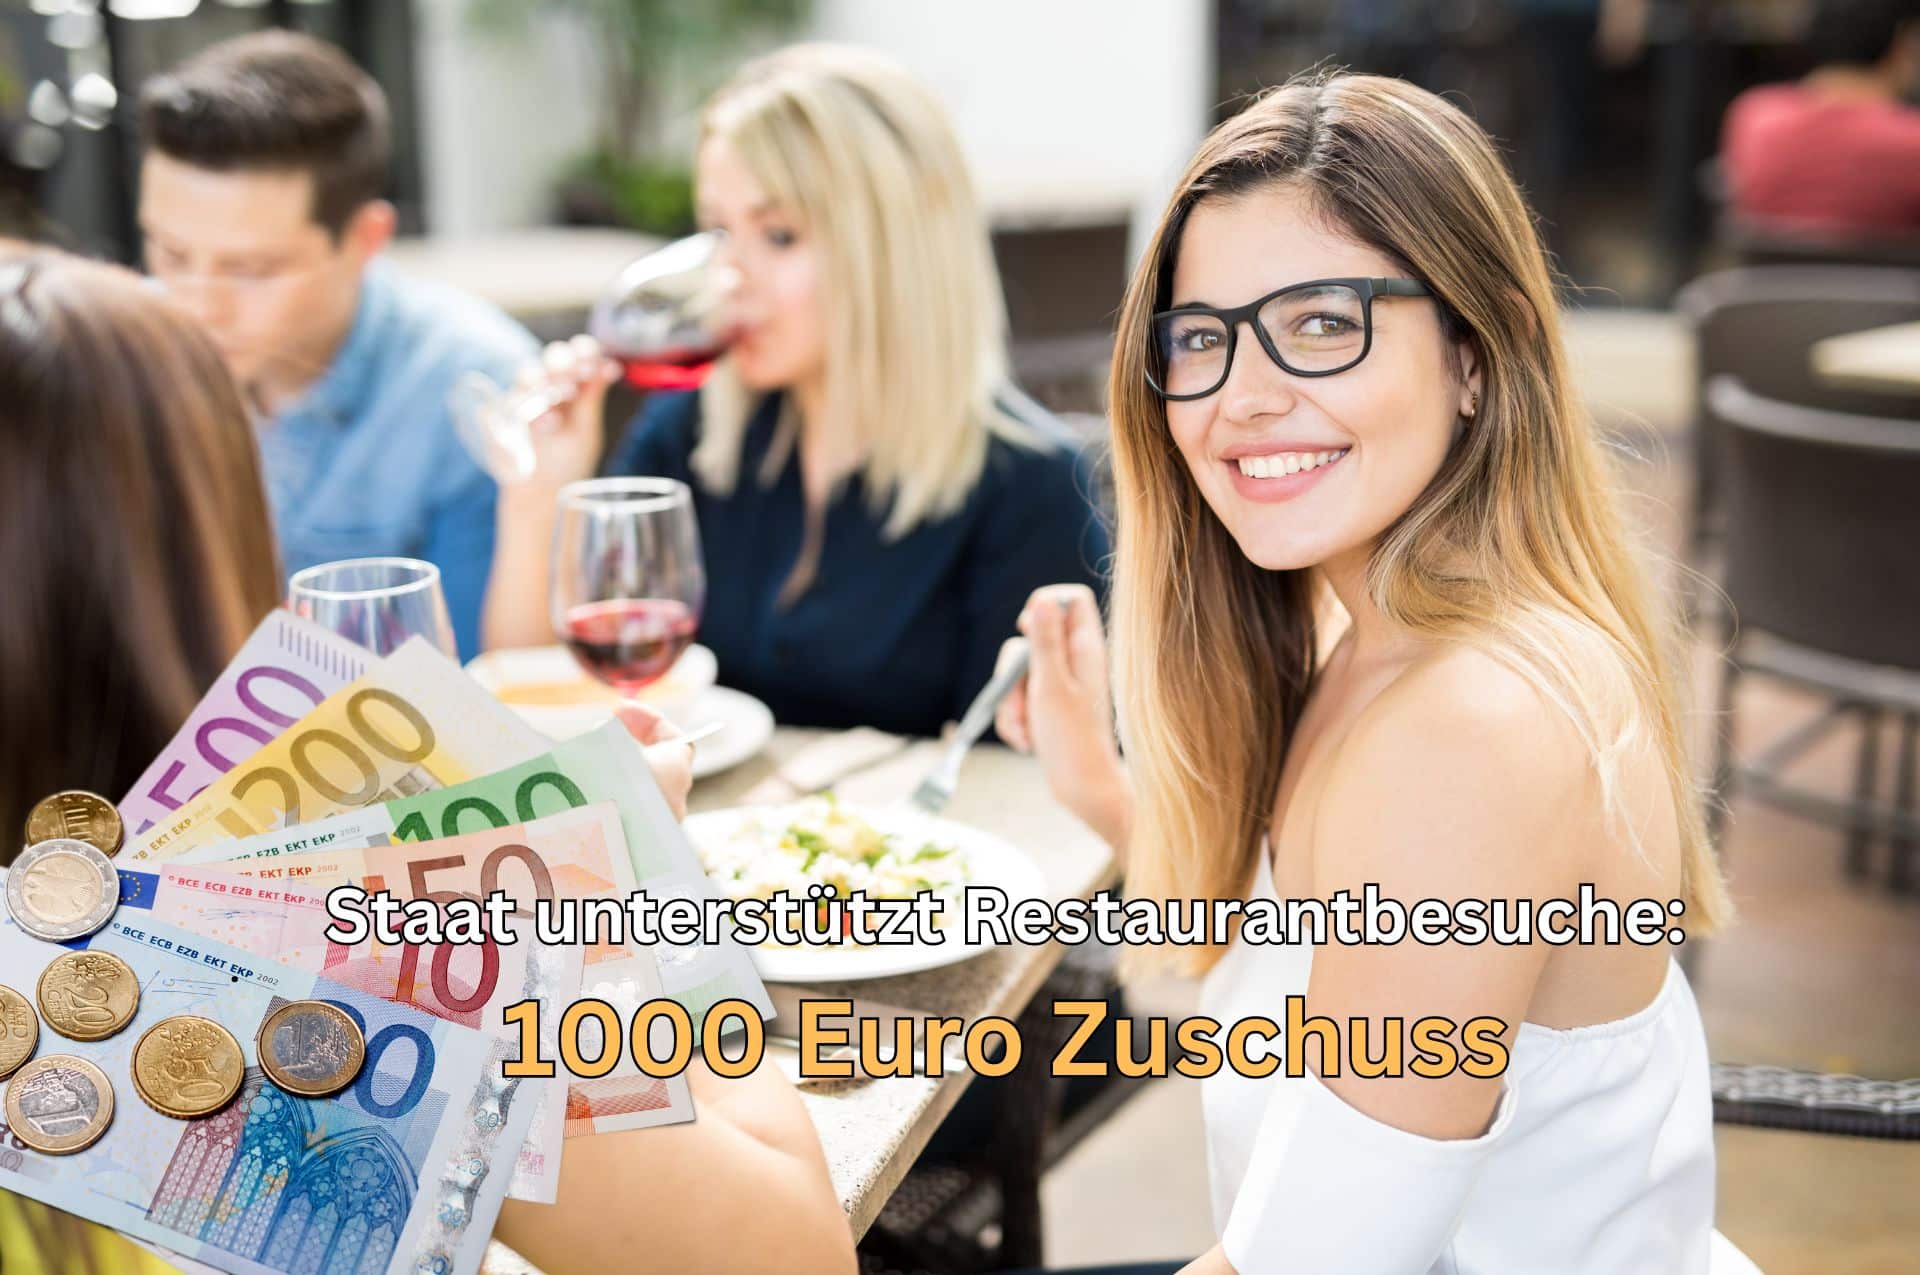 Neuer 1000 Euro-Zuschuss: Staat unterstützt Restaurantbesuche